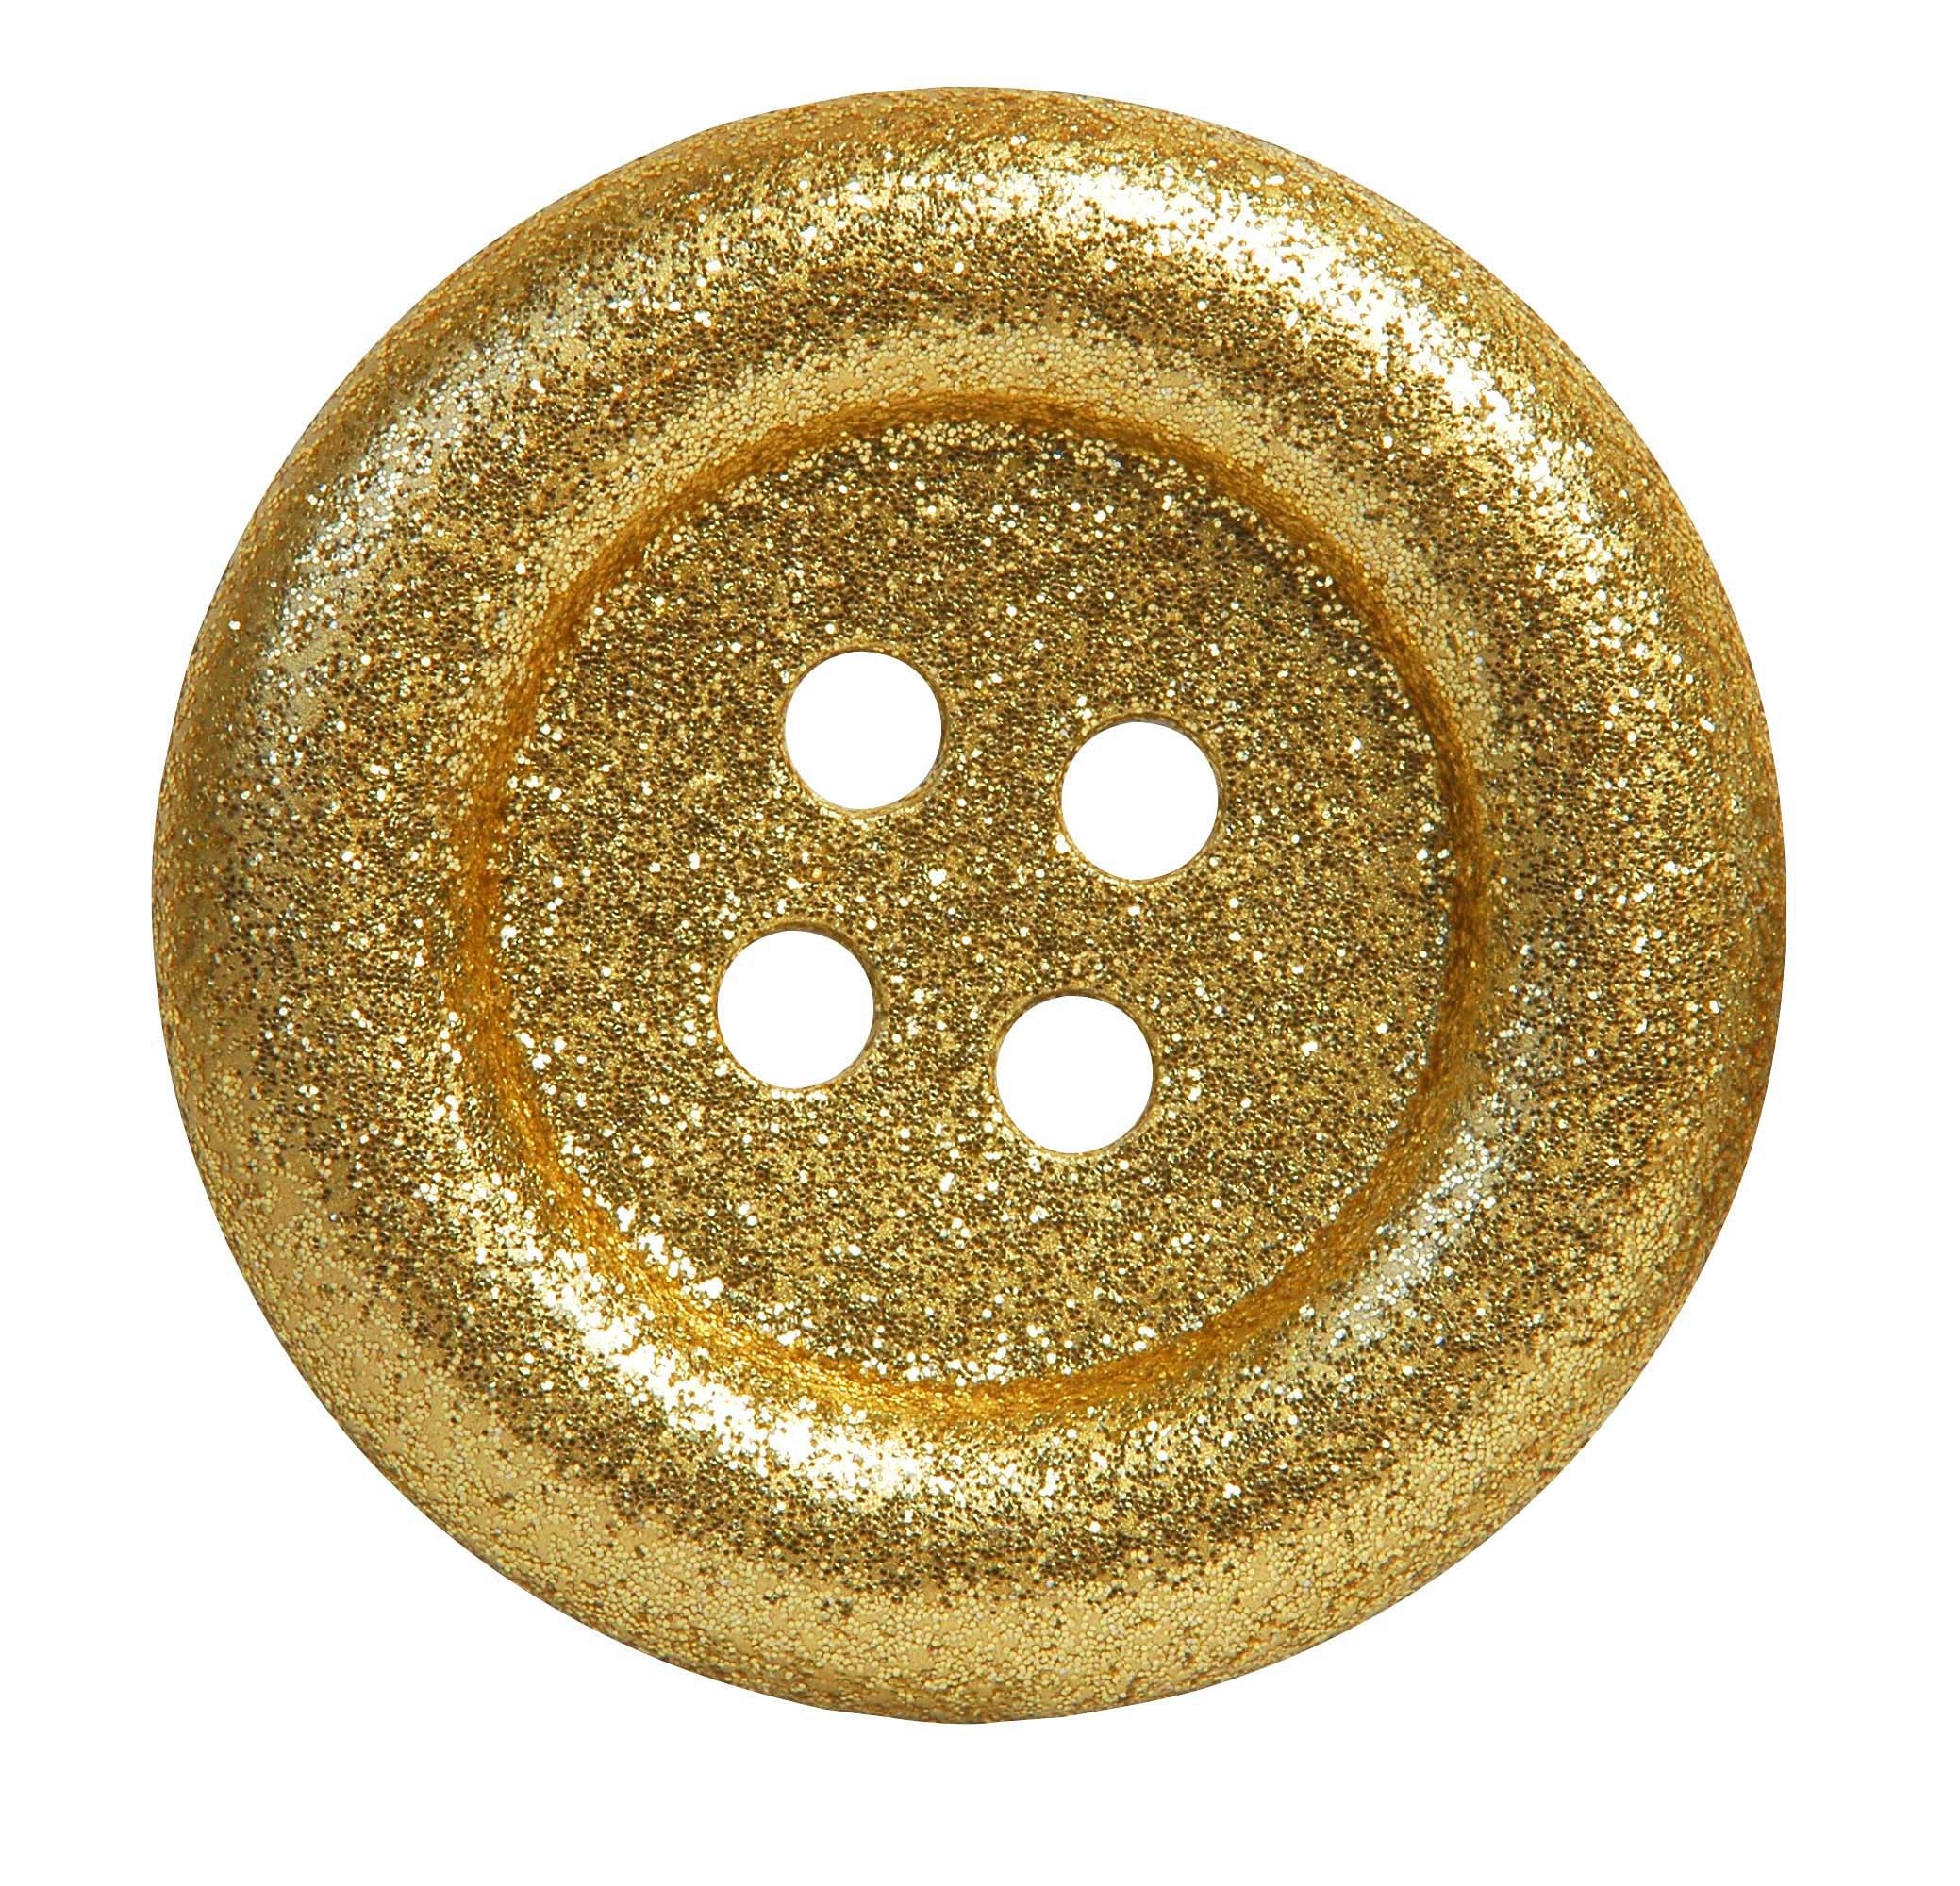 bronze button